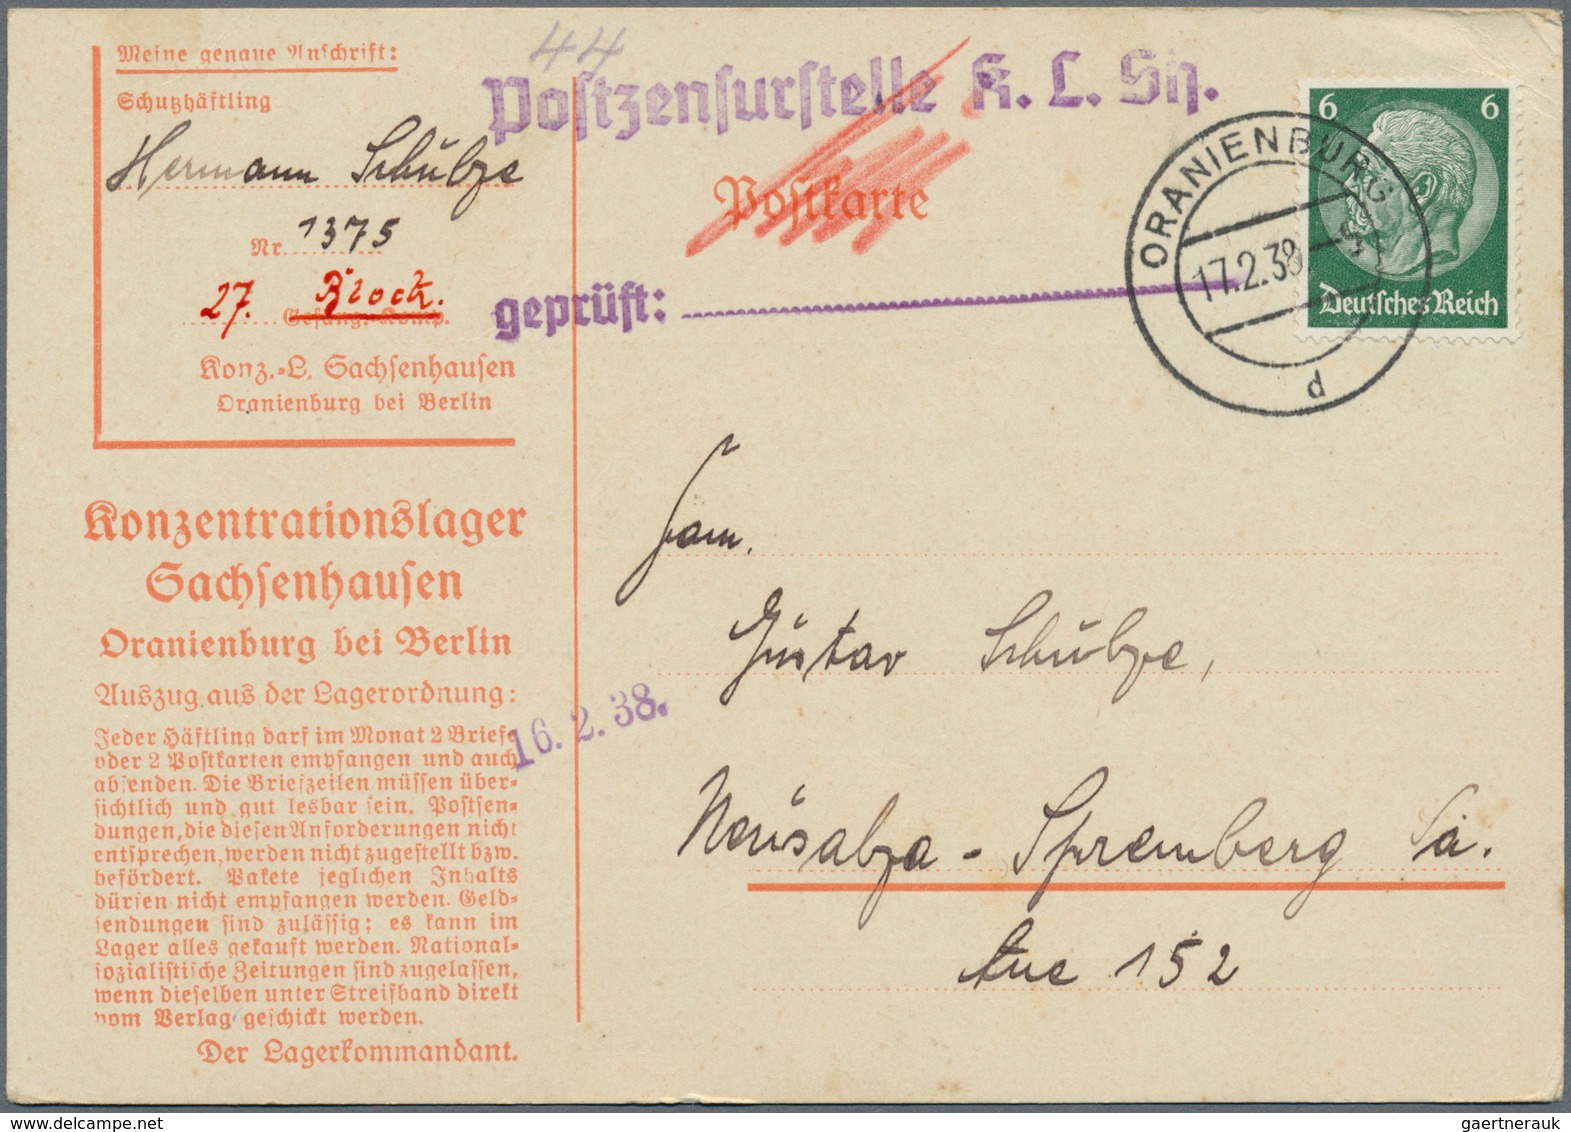 01417 KZ-Post: 1933/1945, sehr umfangreicher und detaillierter Sammlungsbestand mit ca. 260 Belegen im Bri